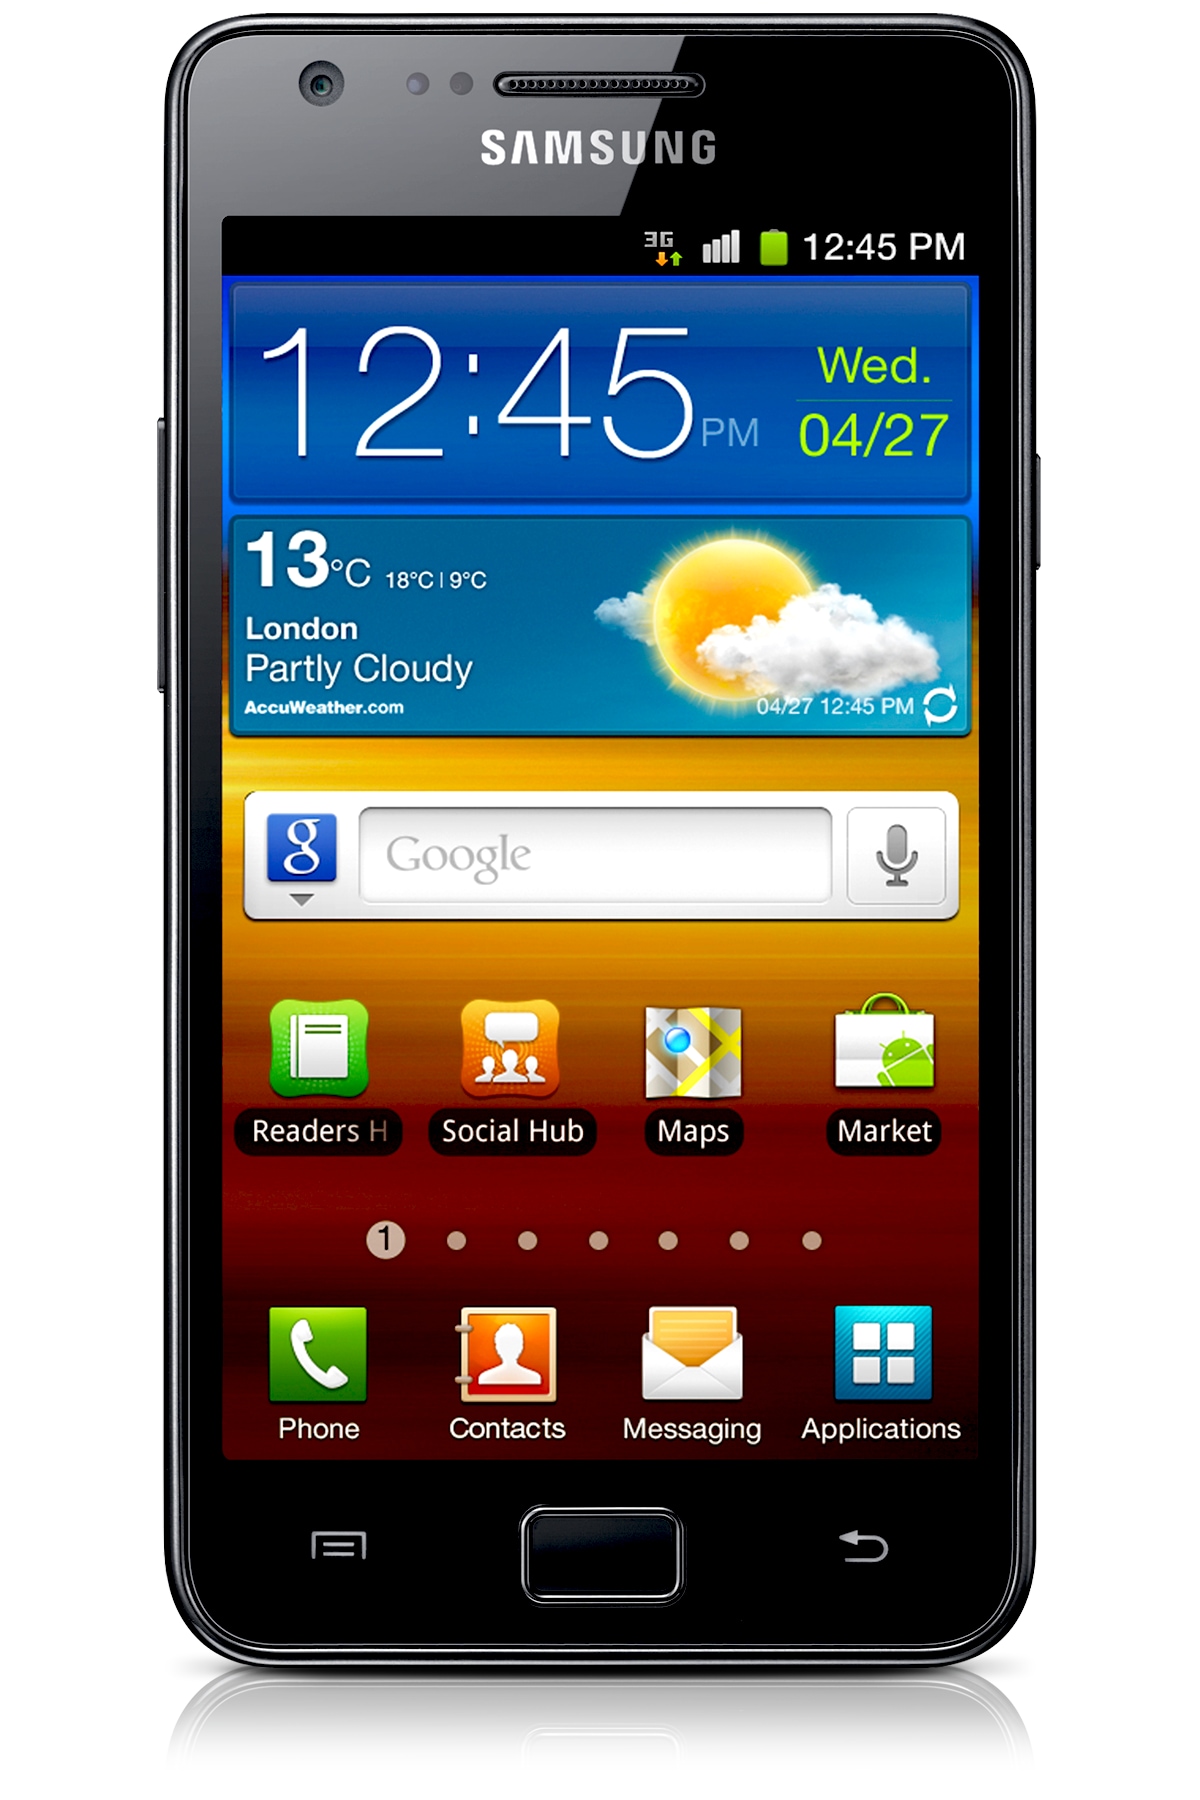 Galaxy S Ii Gt I9100 Singapour Mode D Emploi Manuel De L Utilisateur Manuels Samsung